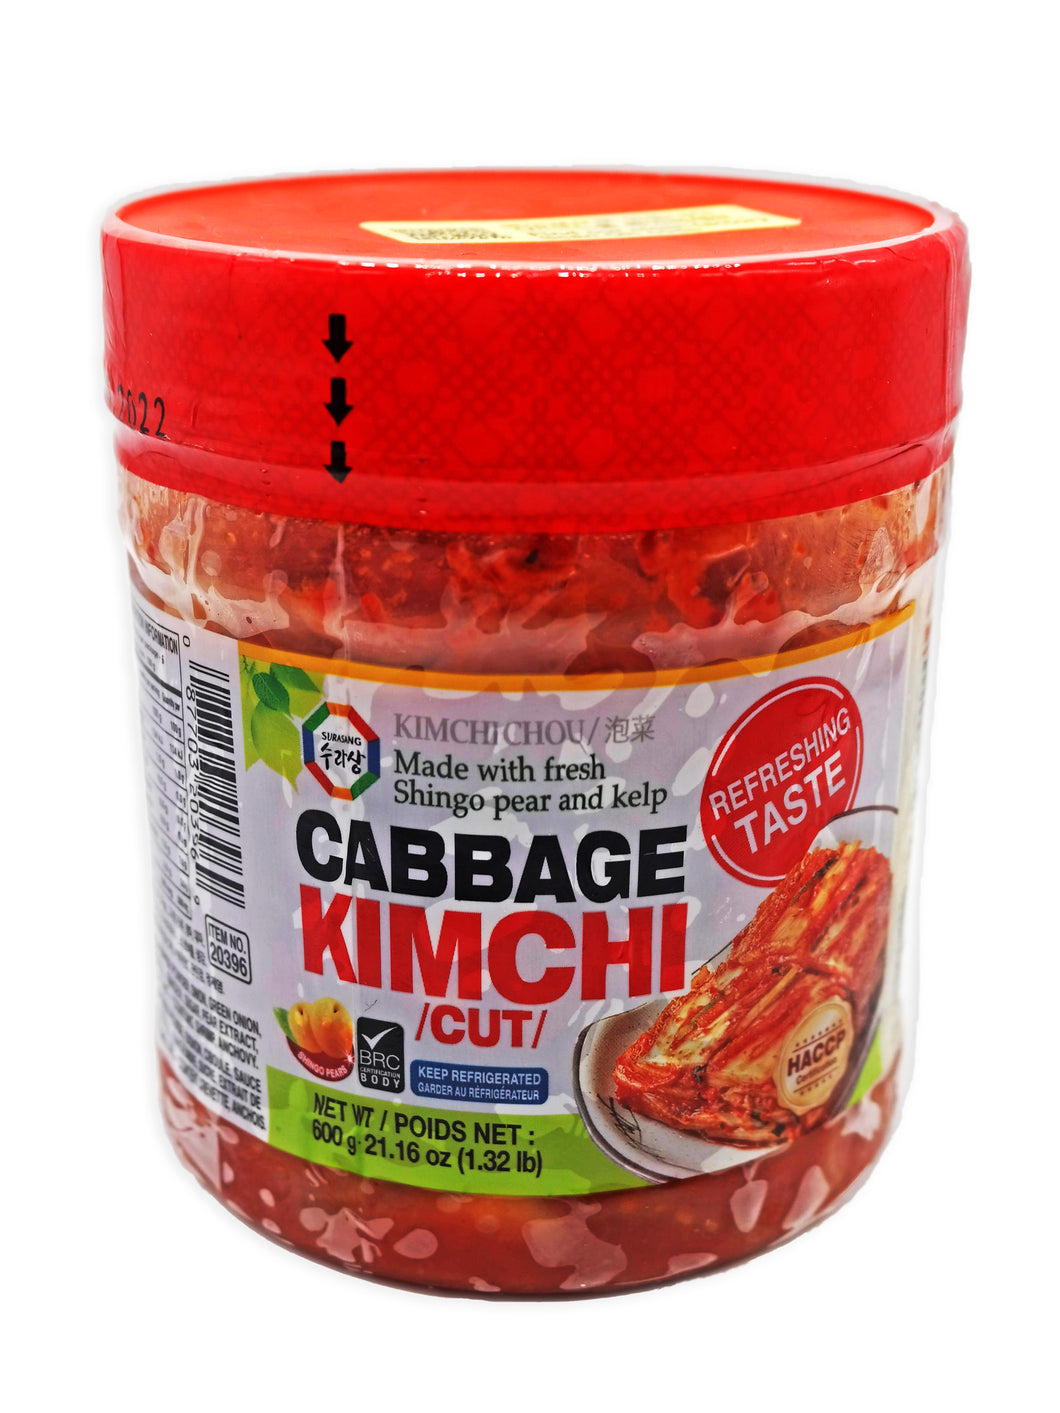 Surasang Cabbage Kimchi (Cut)